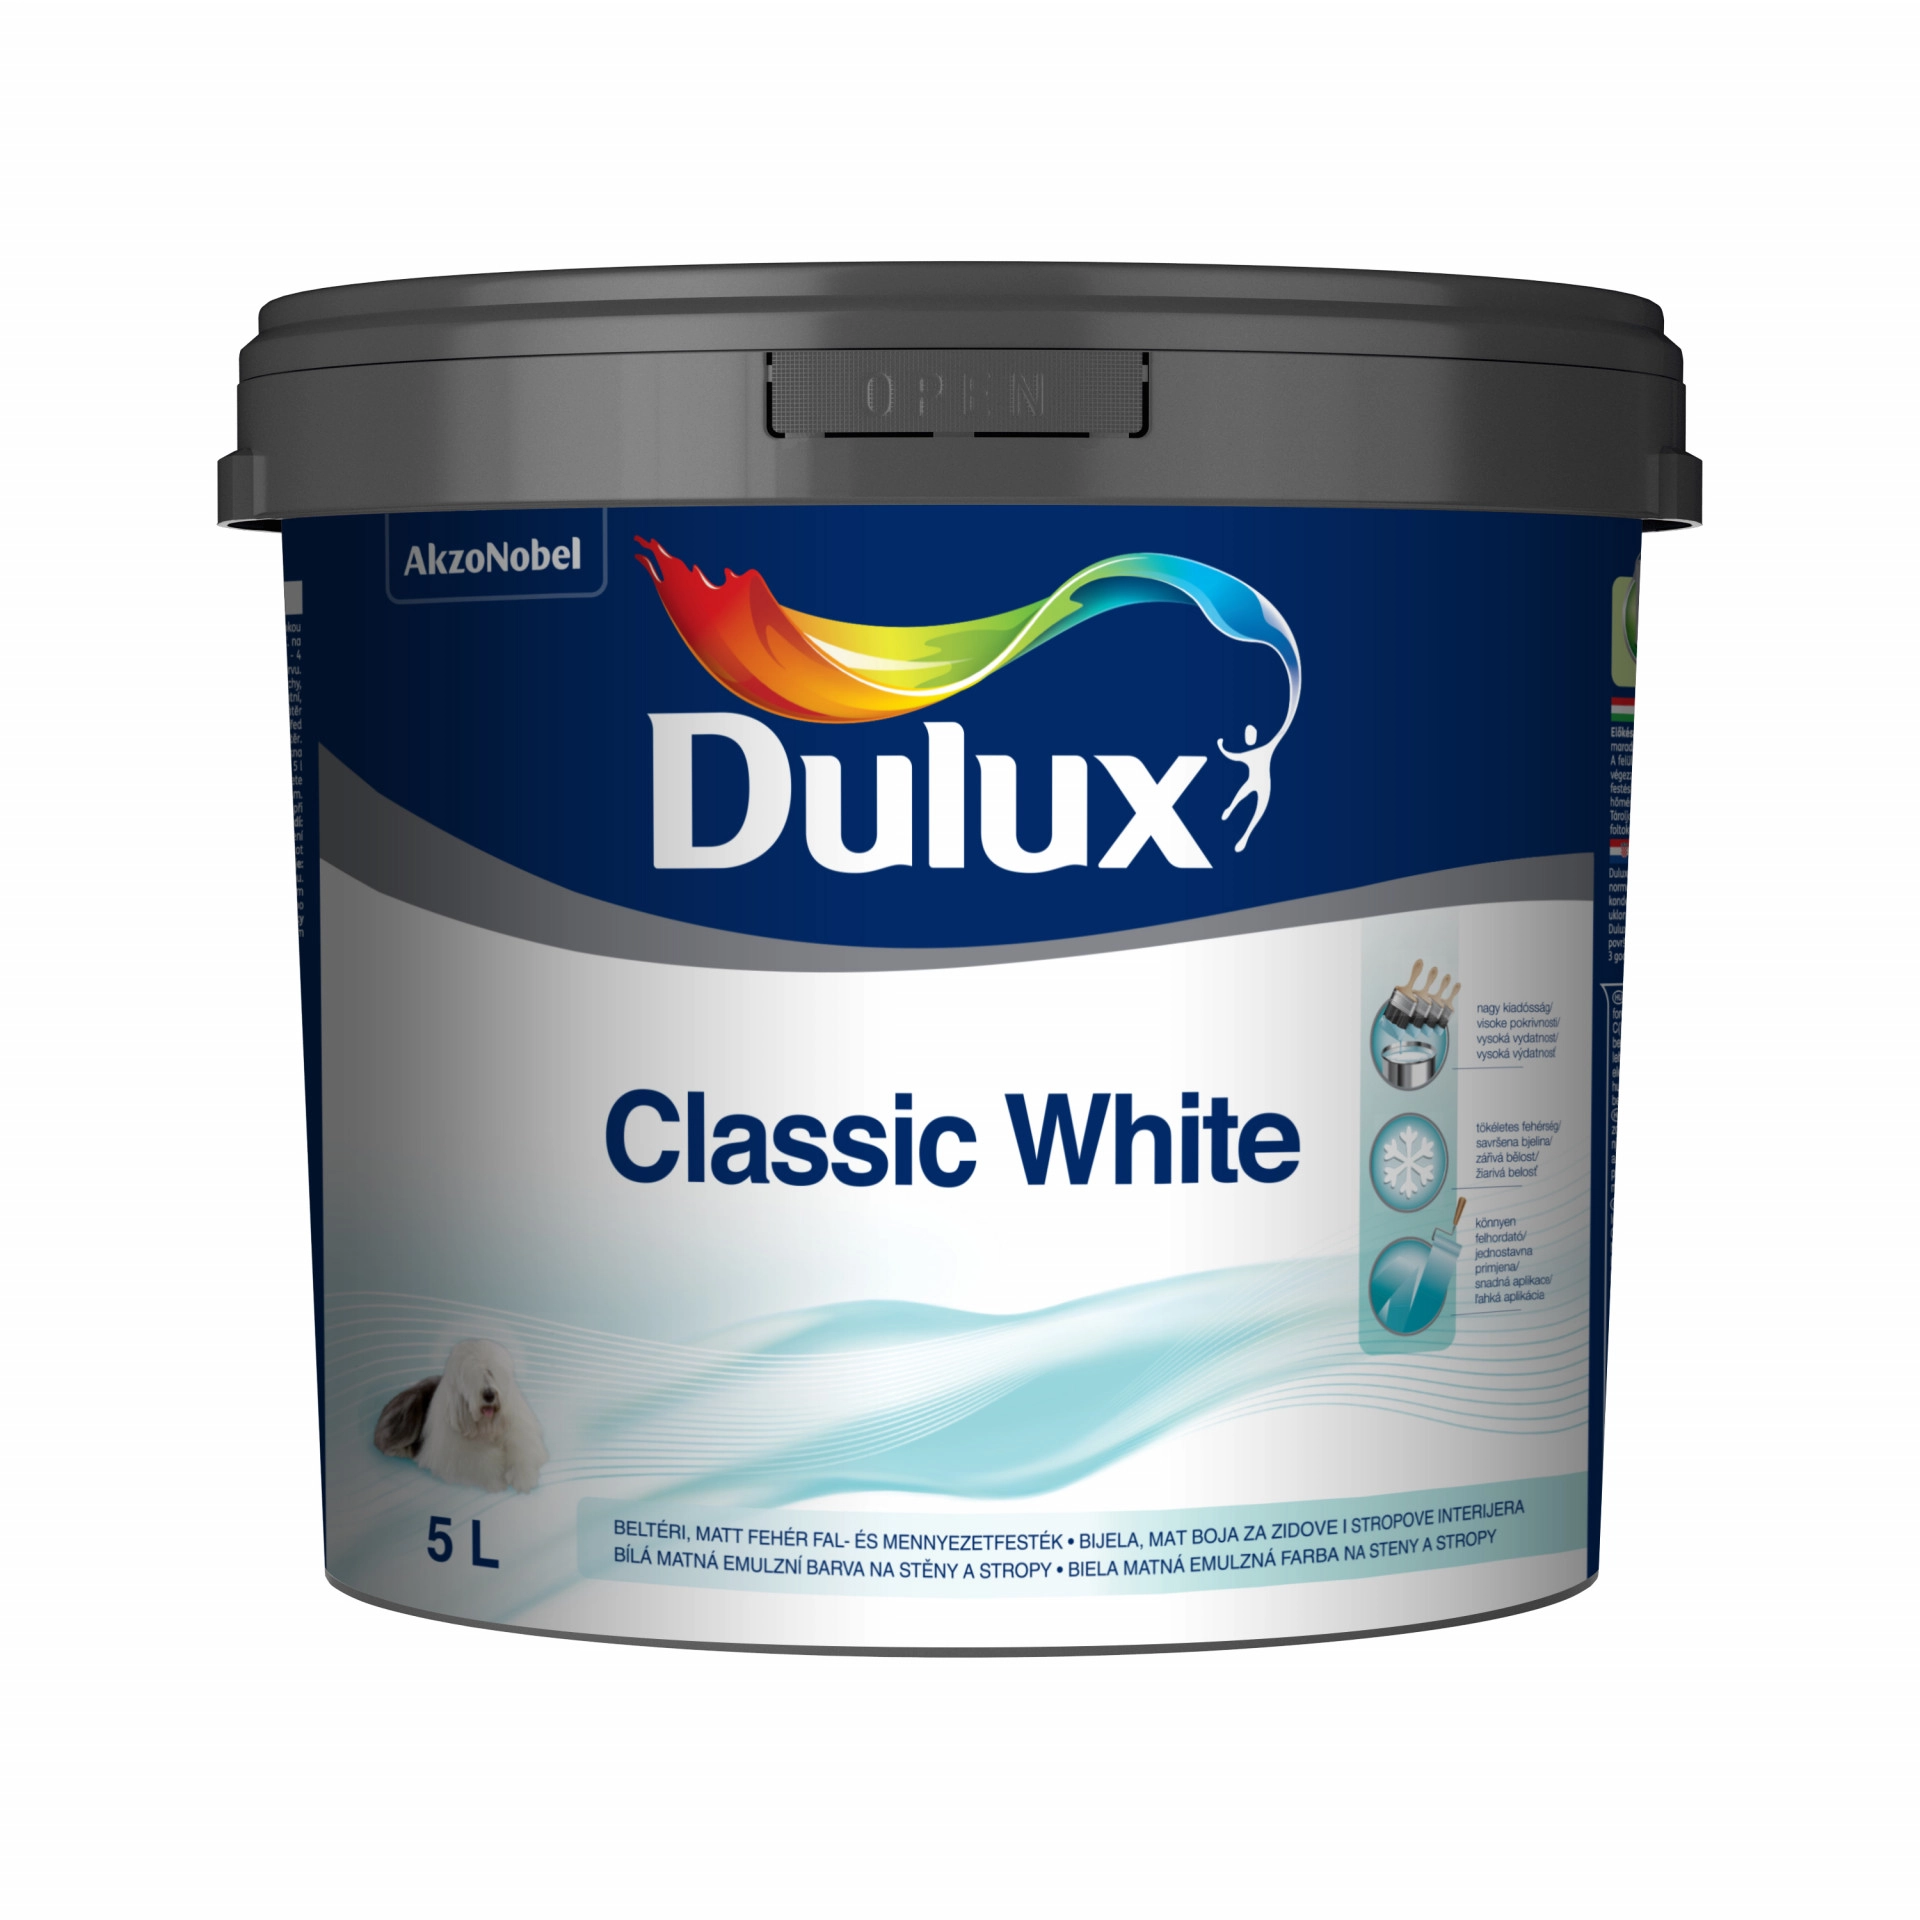 Dulux Classic White beltéri falfesték 5 l